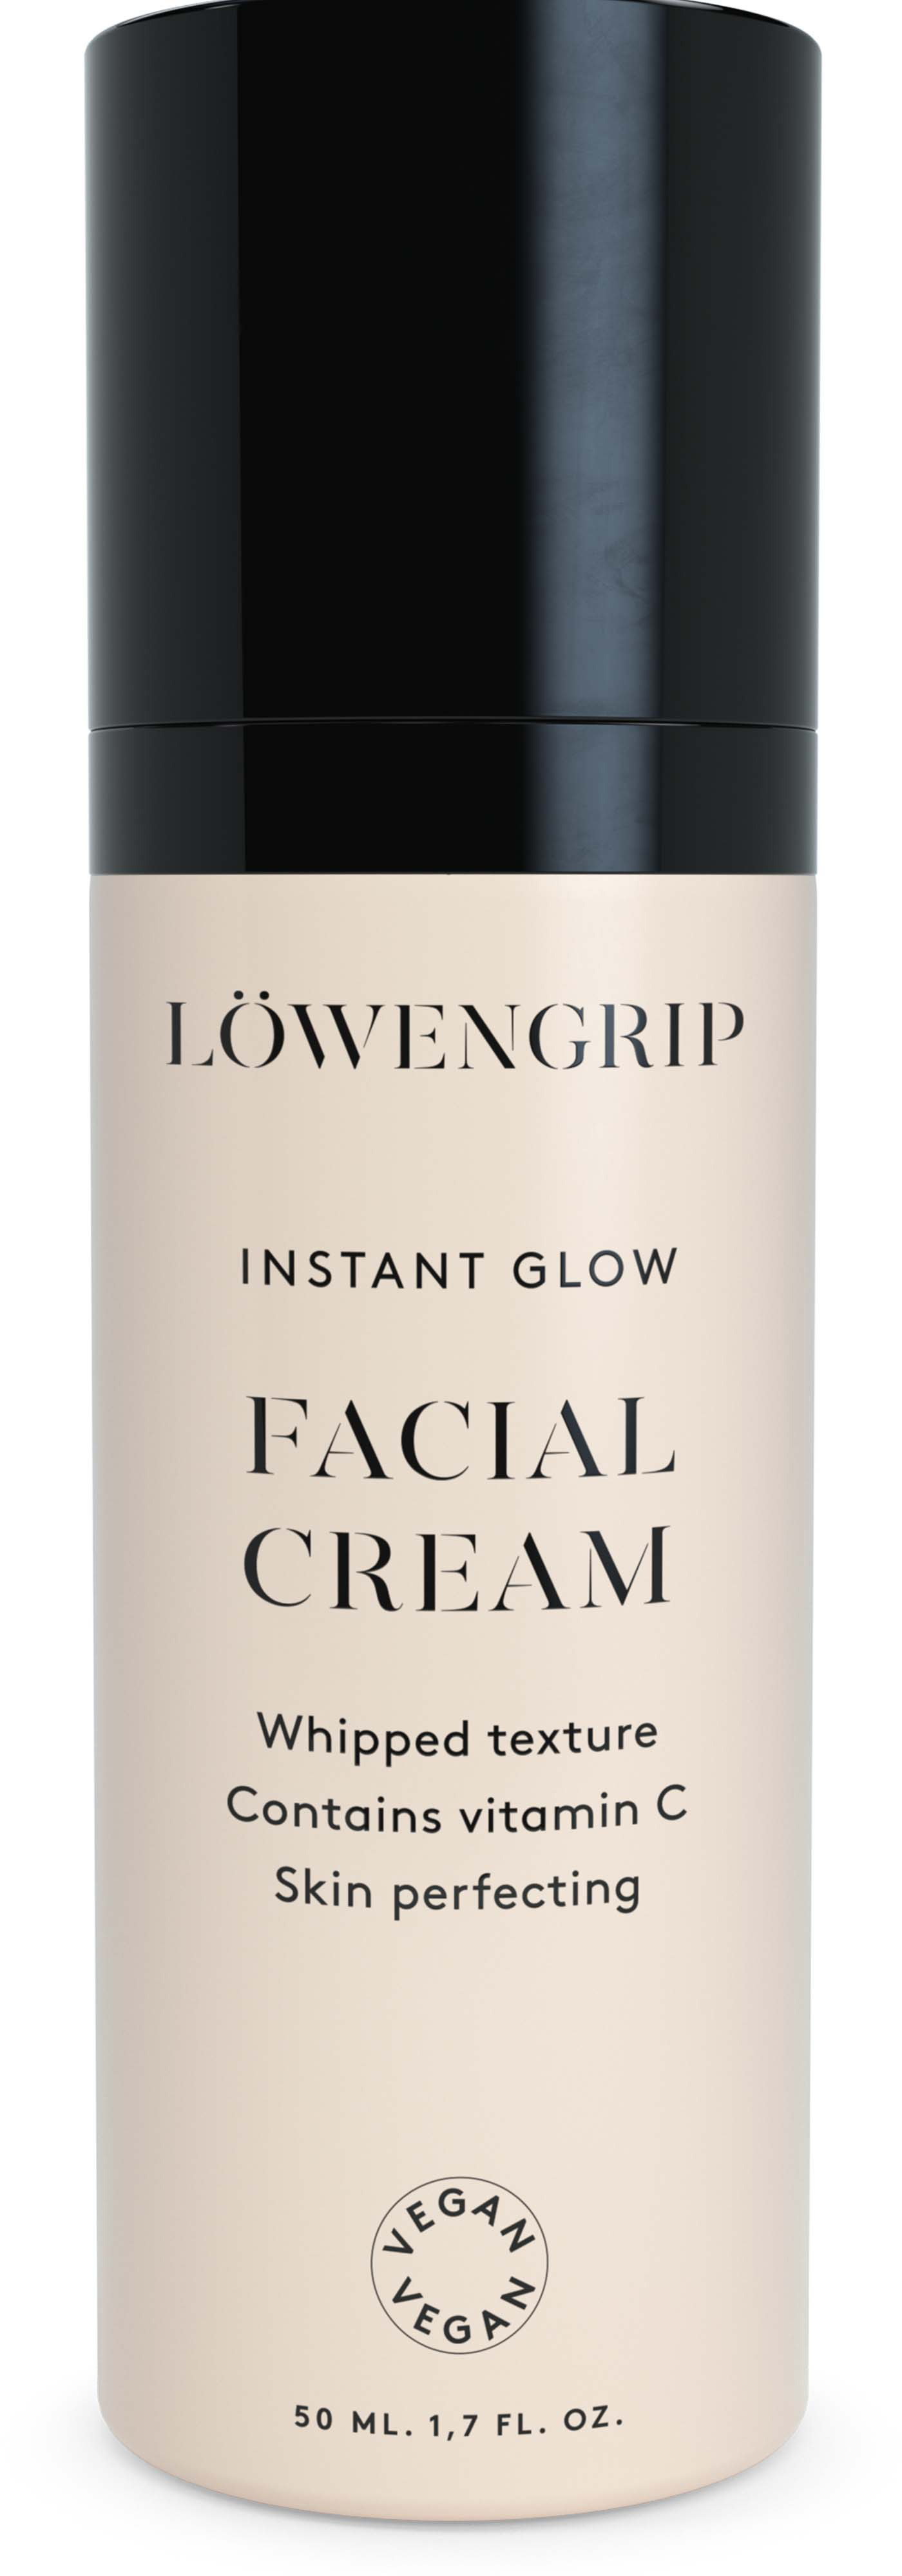 Löwengrip Instant Glow Facial Cream 50 ml